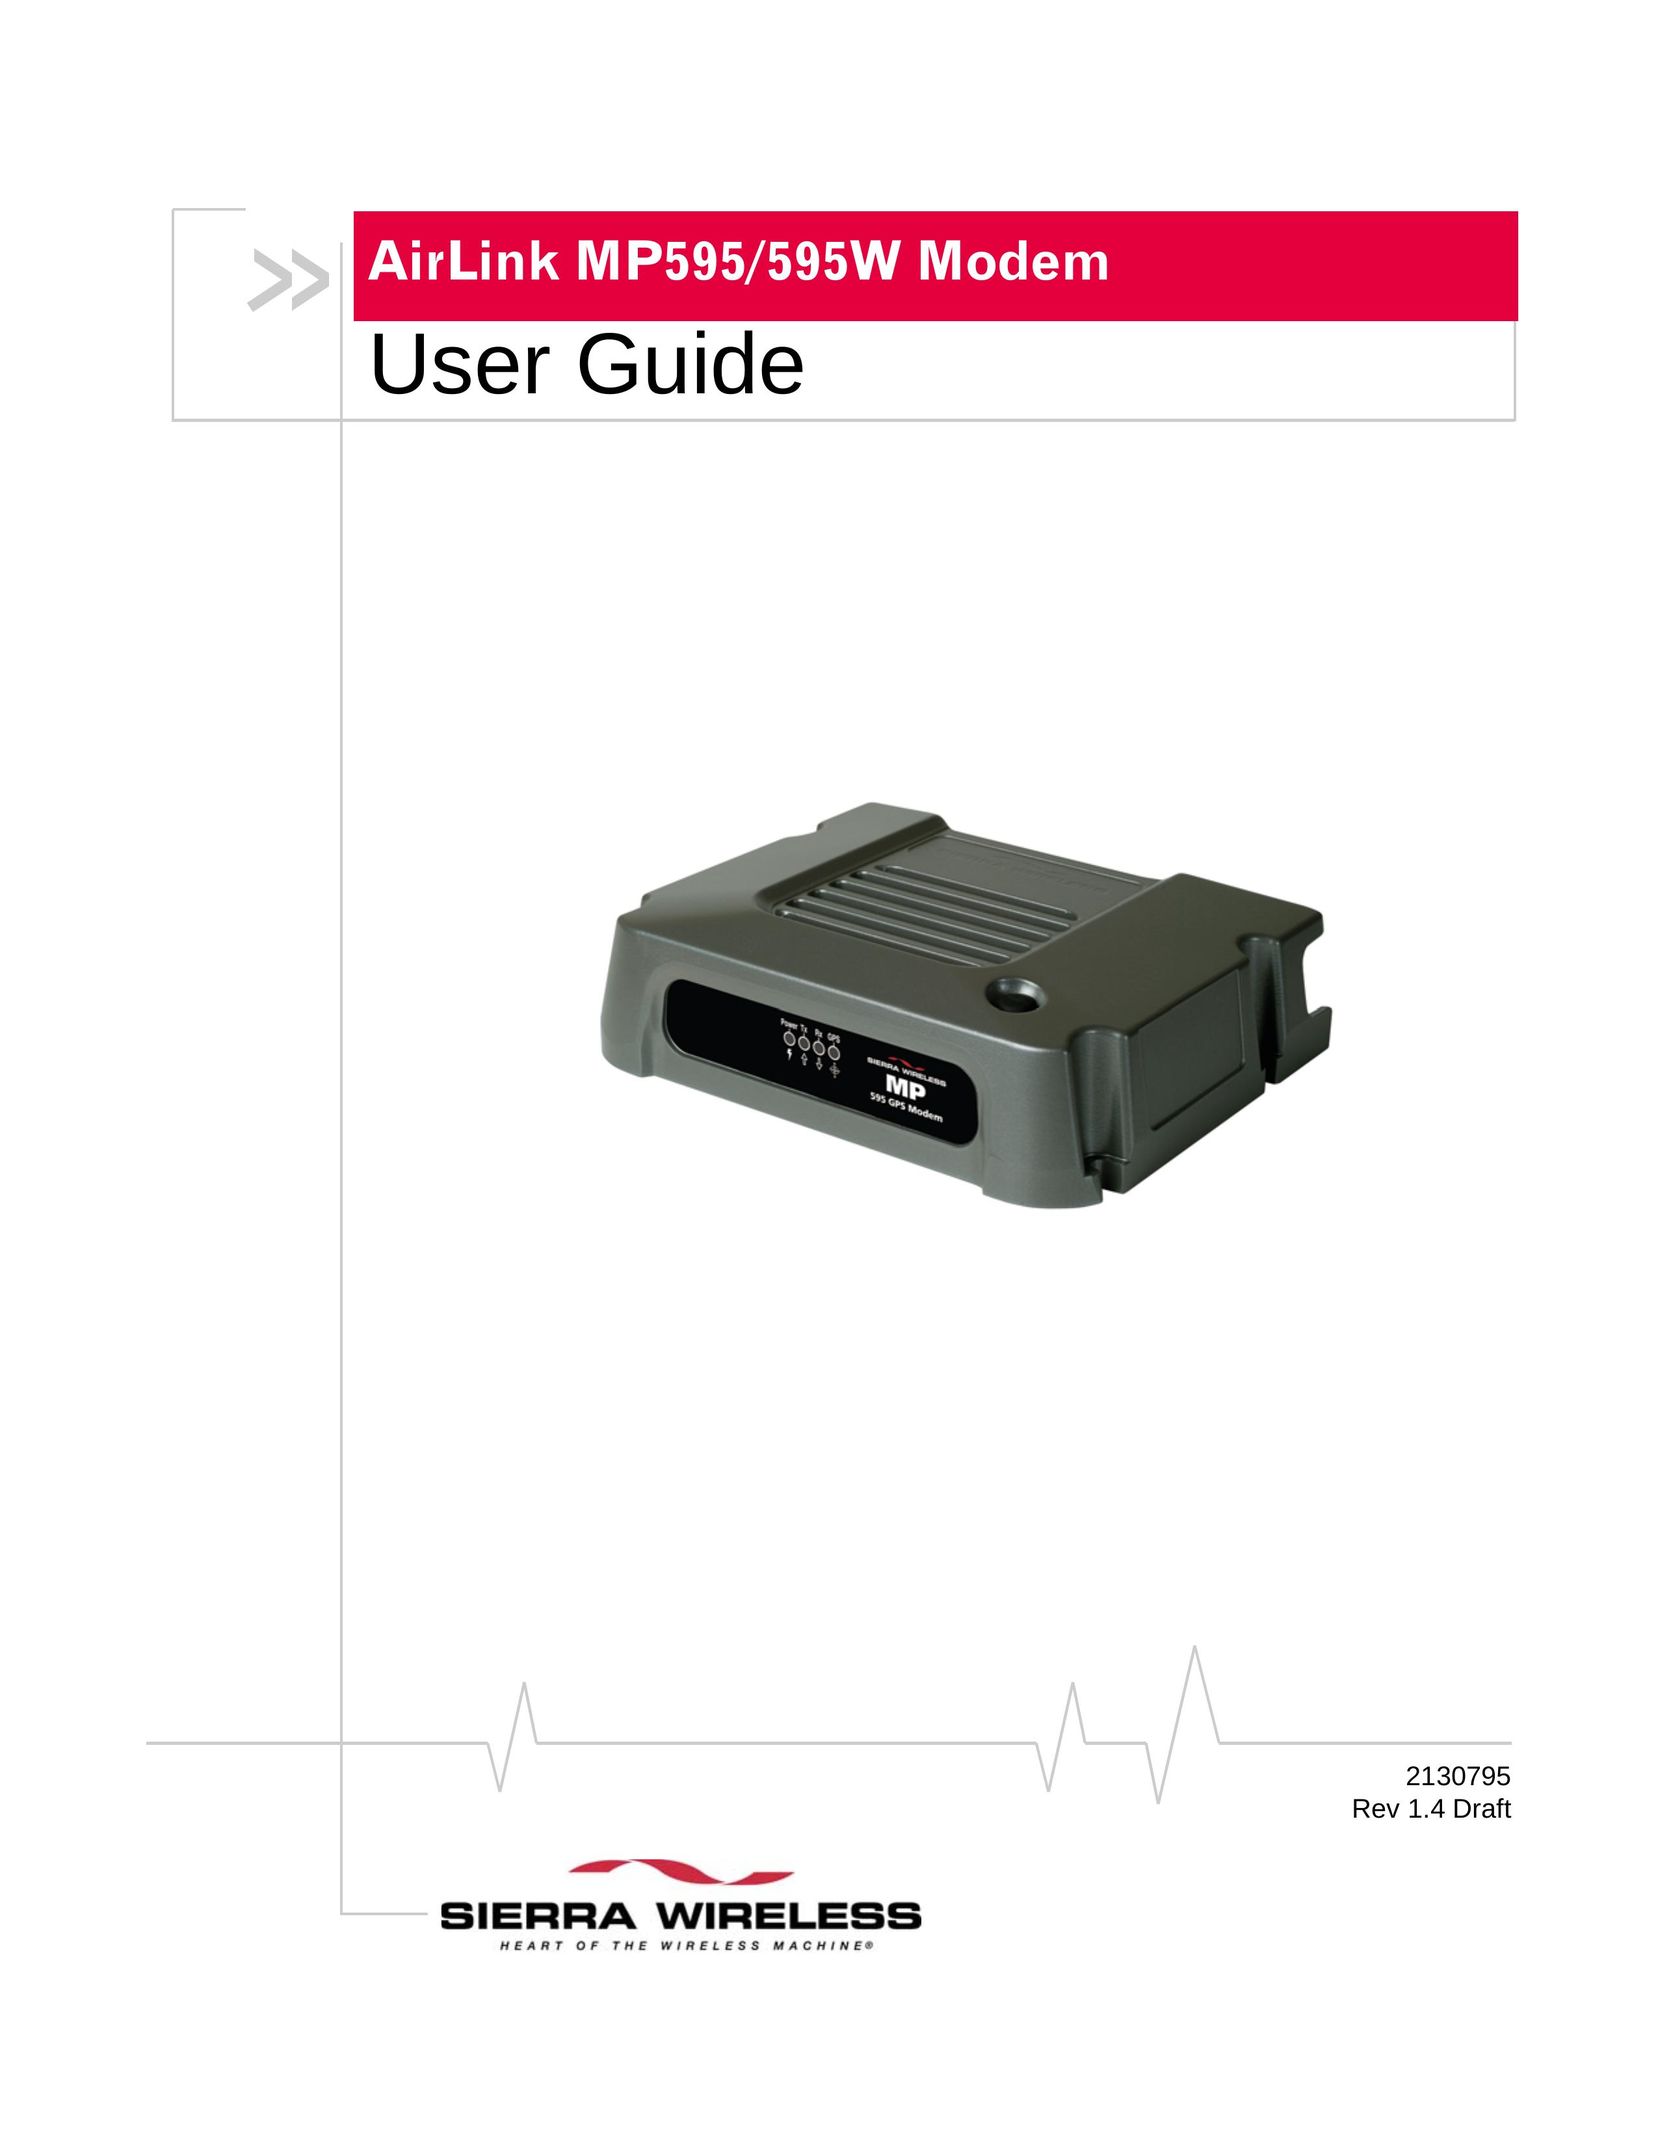 Sierra Wireless MP595W Modem User Manual